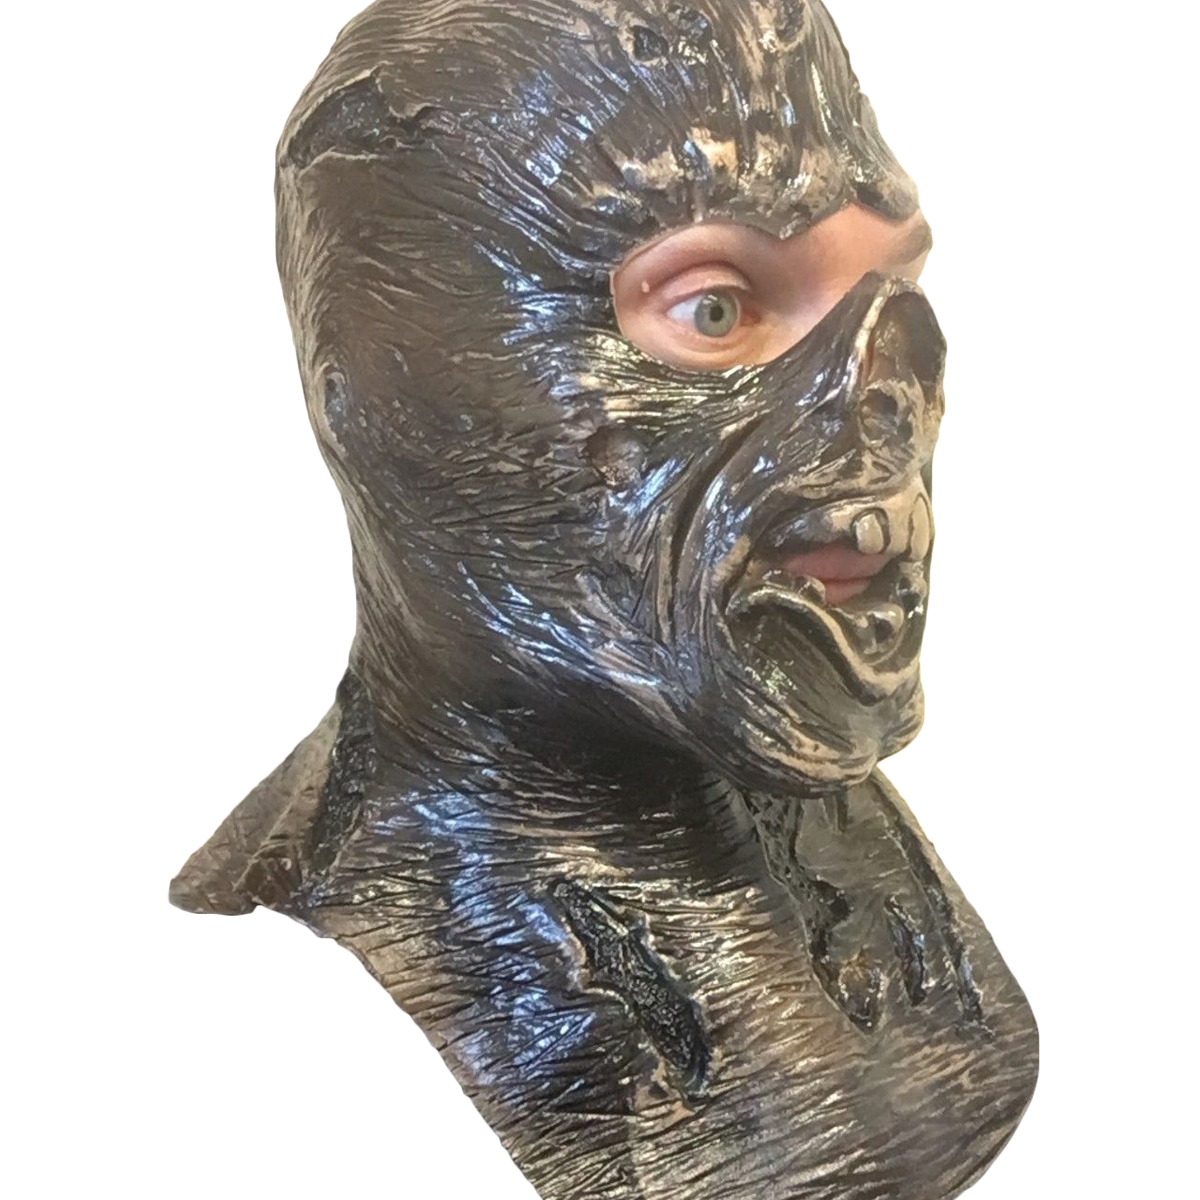 Jason VII 7 Mask